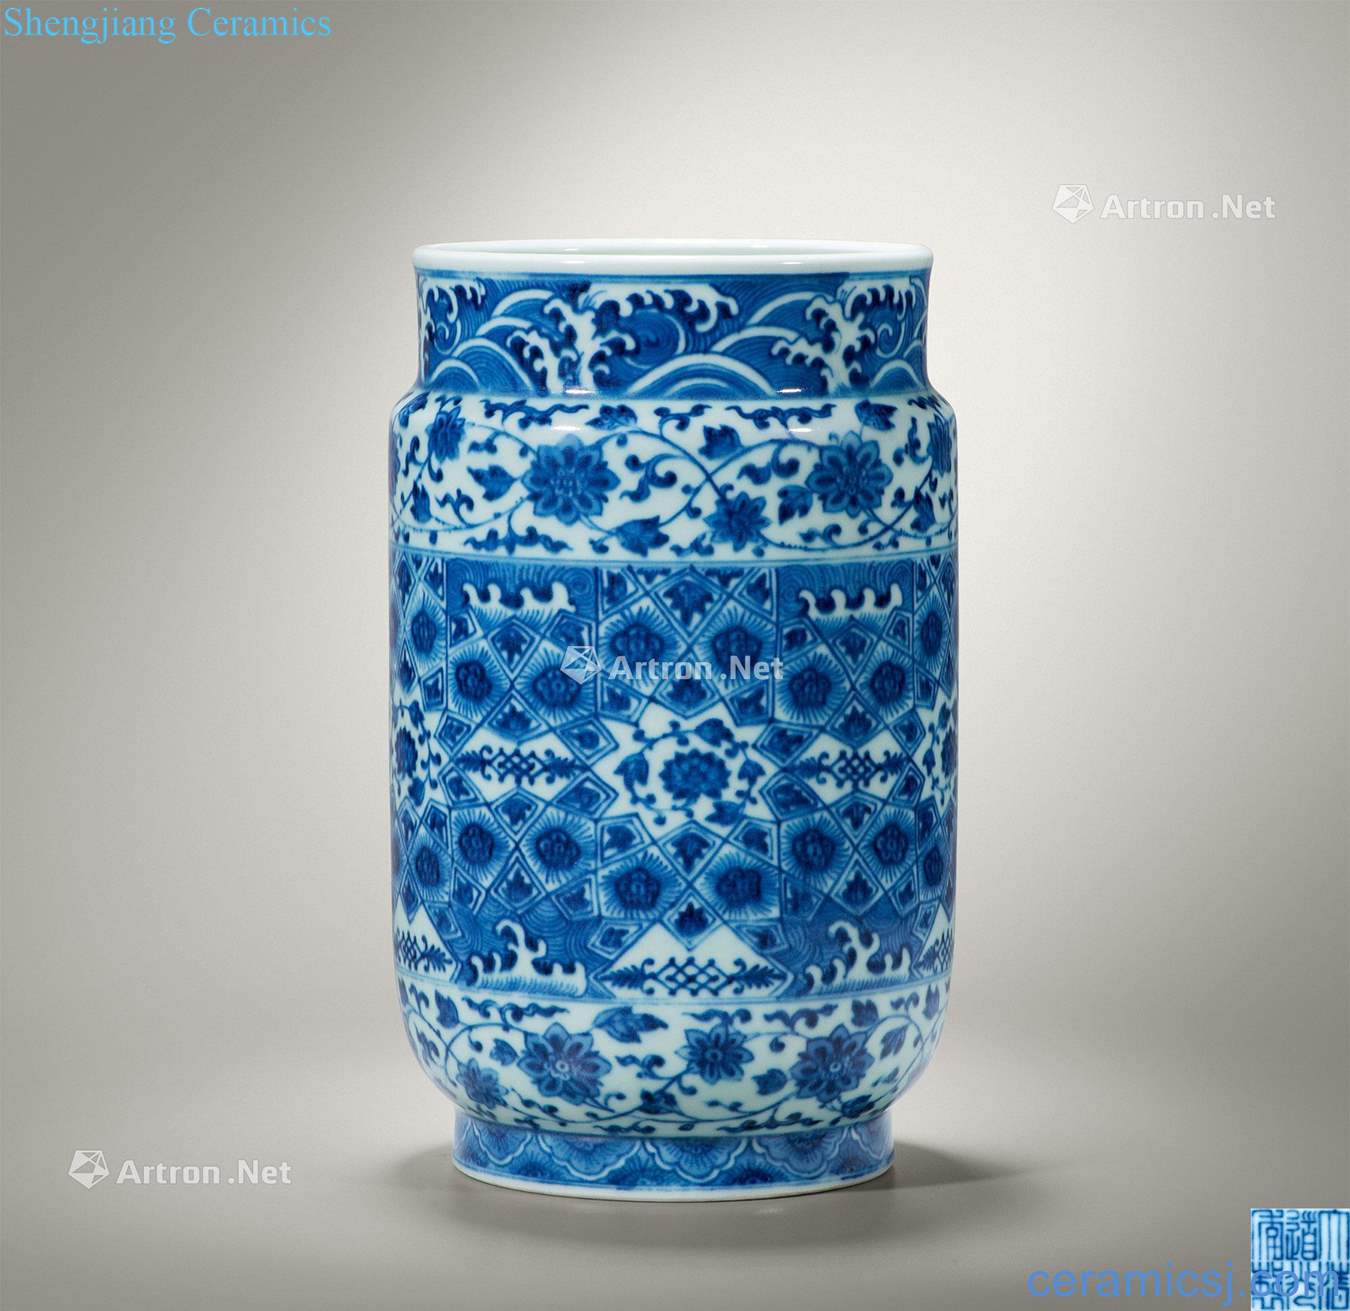 Qing daoguang Blue and white brocade wen zhuang pot